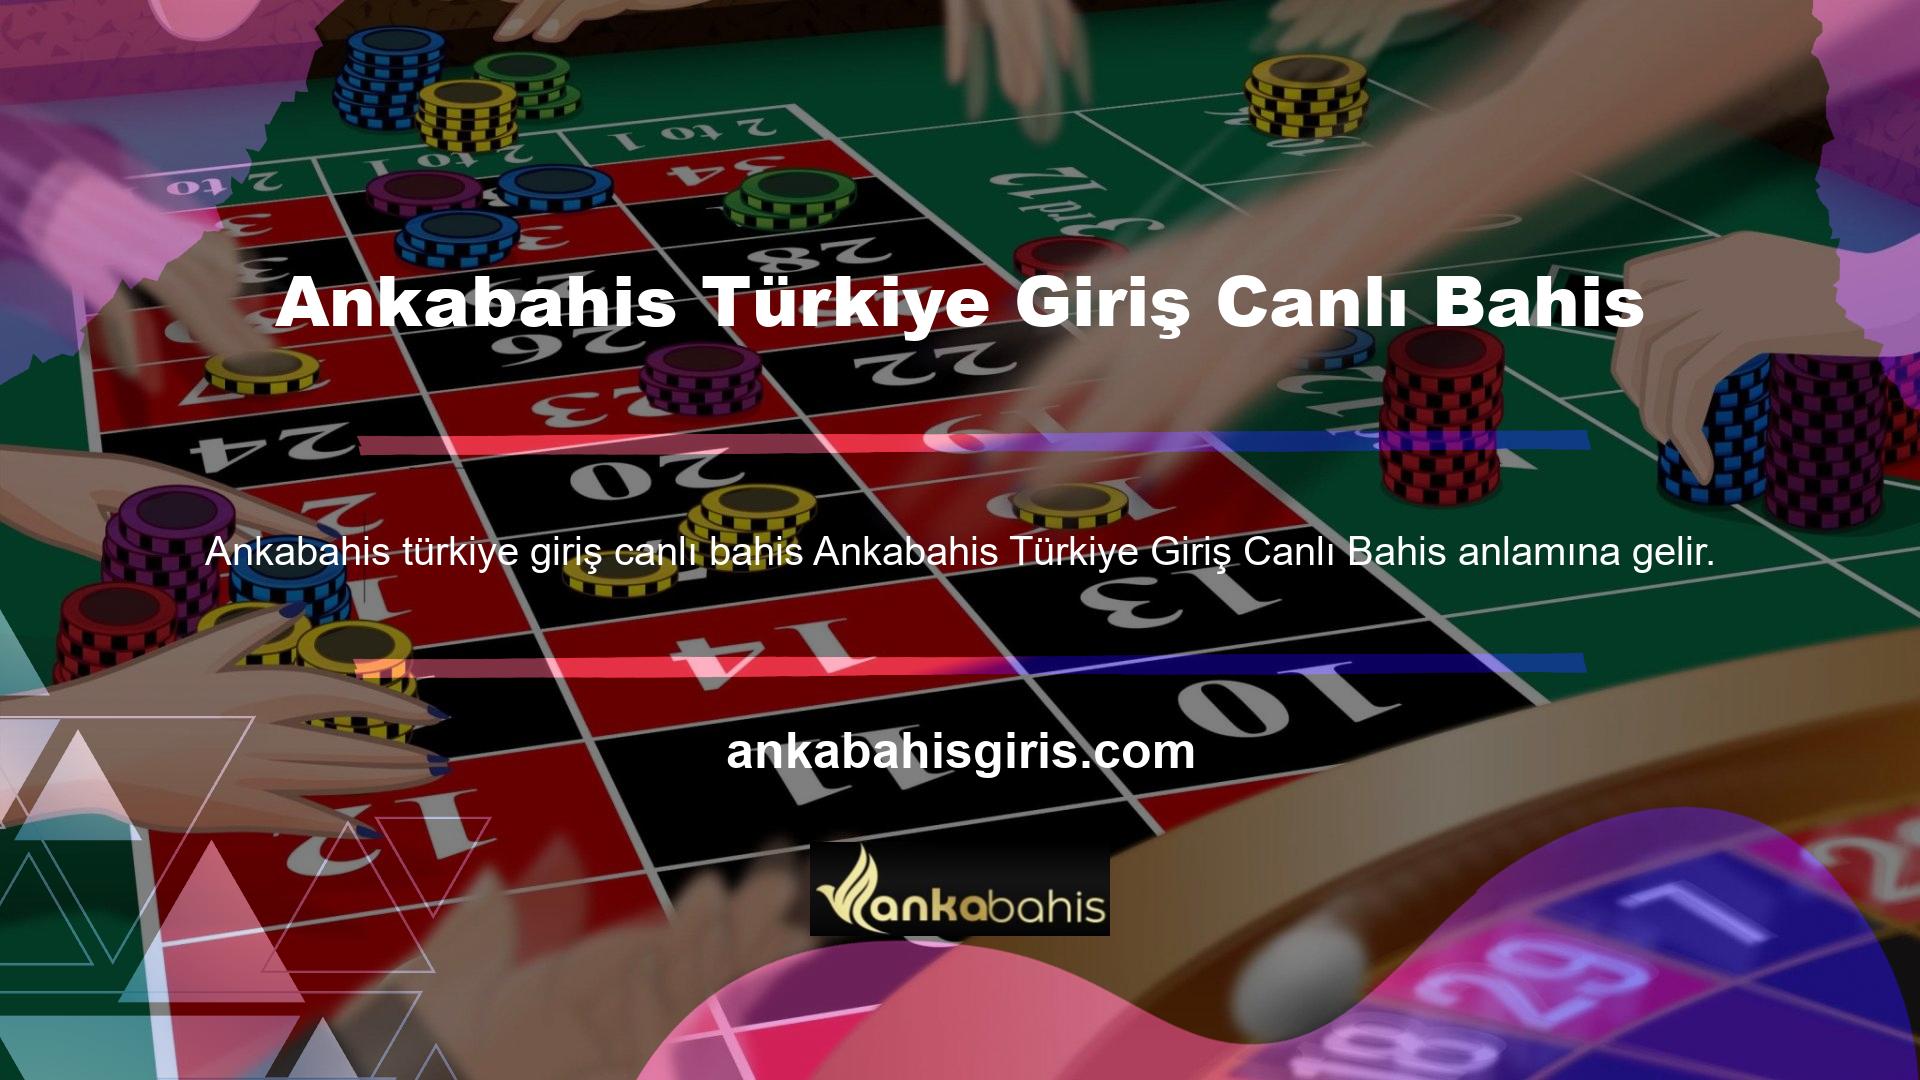 Ankabahis Türkiye Giriş Canlı Bahis Giriş Canlı Bahis, Web Sitesinde belirtilen sektör ve oyun uygulamalarına göre düzenlenen yarışmalar için kuponların oluşturulmasıdır